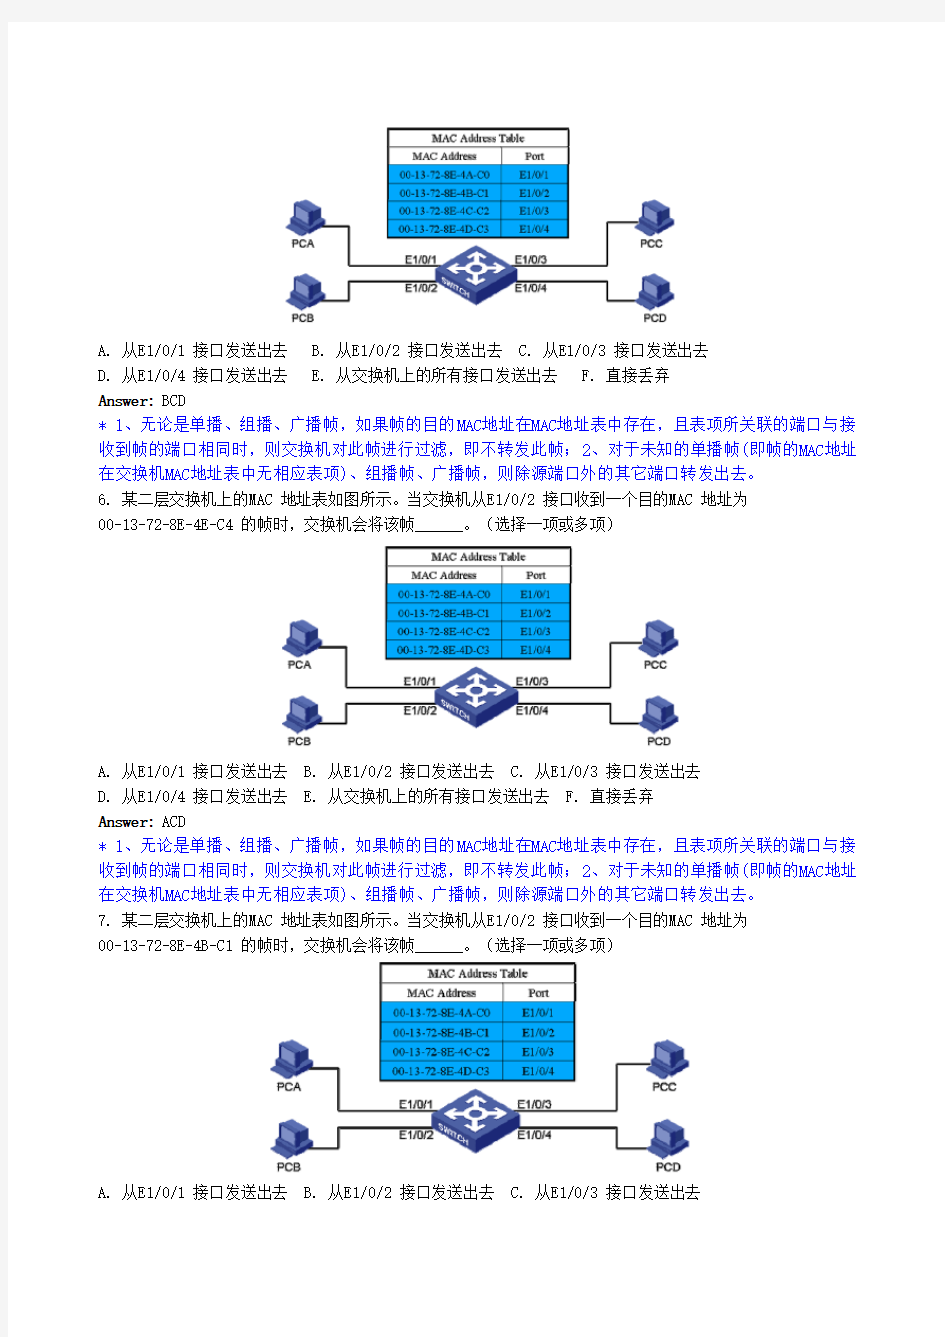 2013年H3CNE题库官网最新完整第7篇 以太网交换技术(附答案详解)